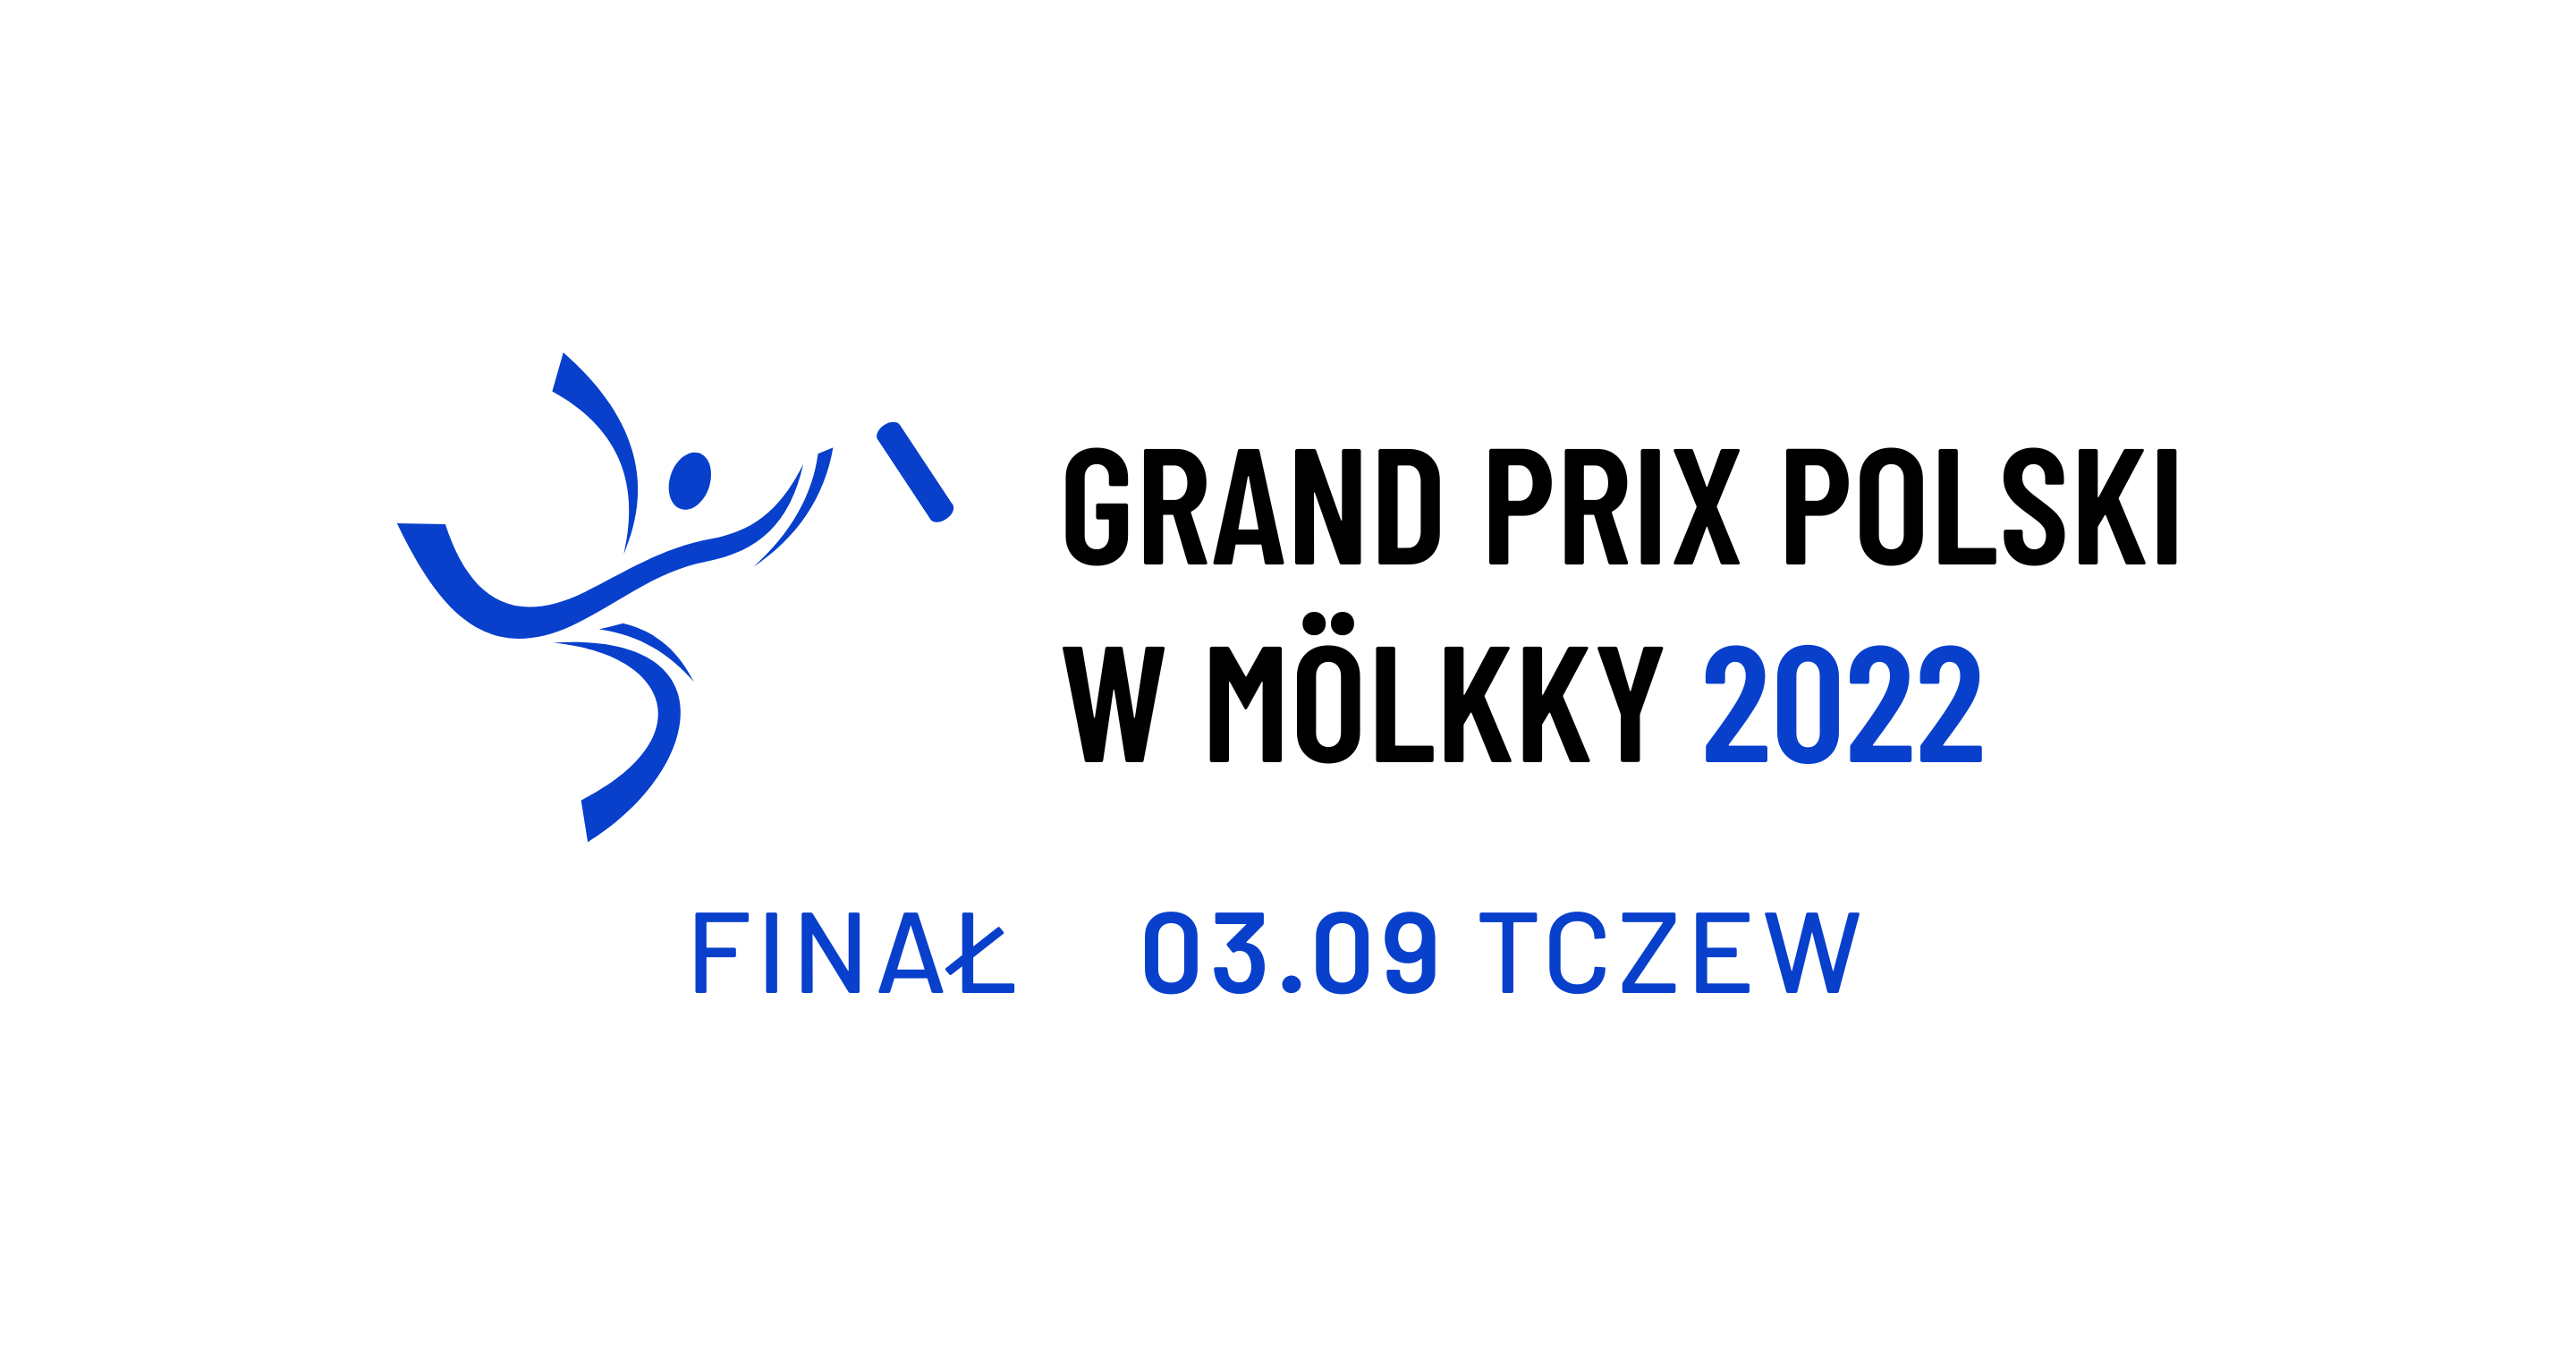 Grand Prix of Poland - event 6/6